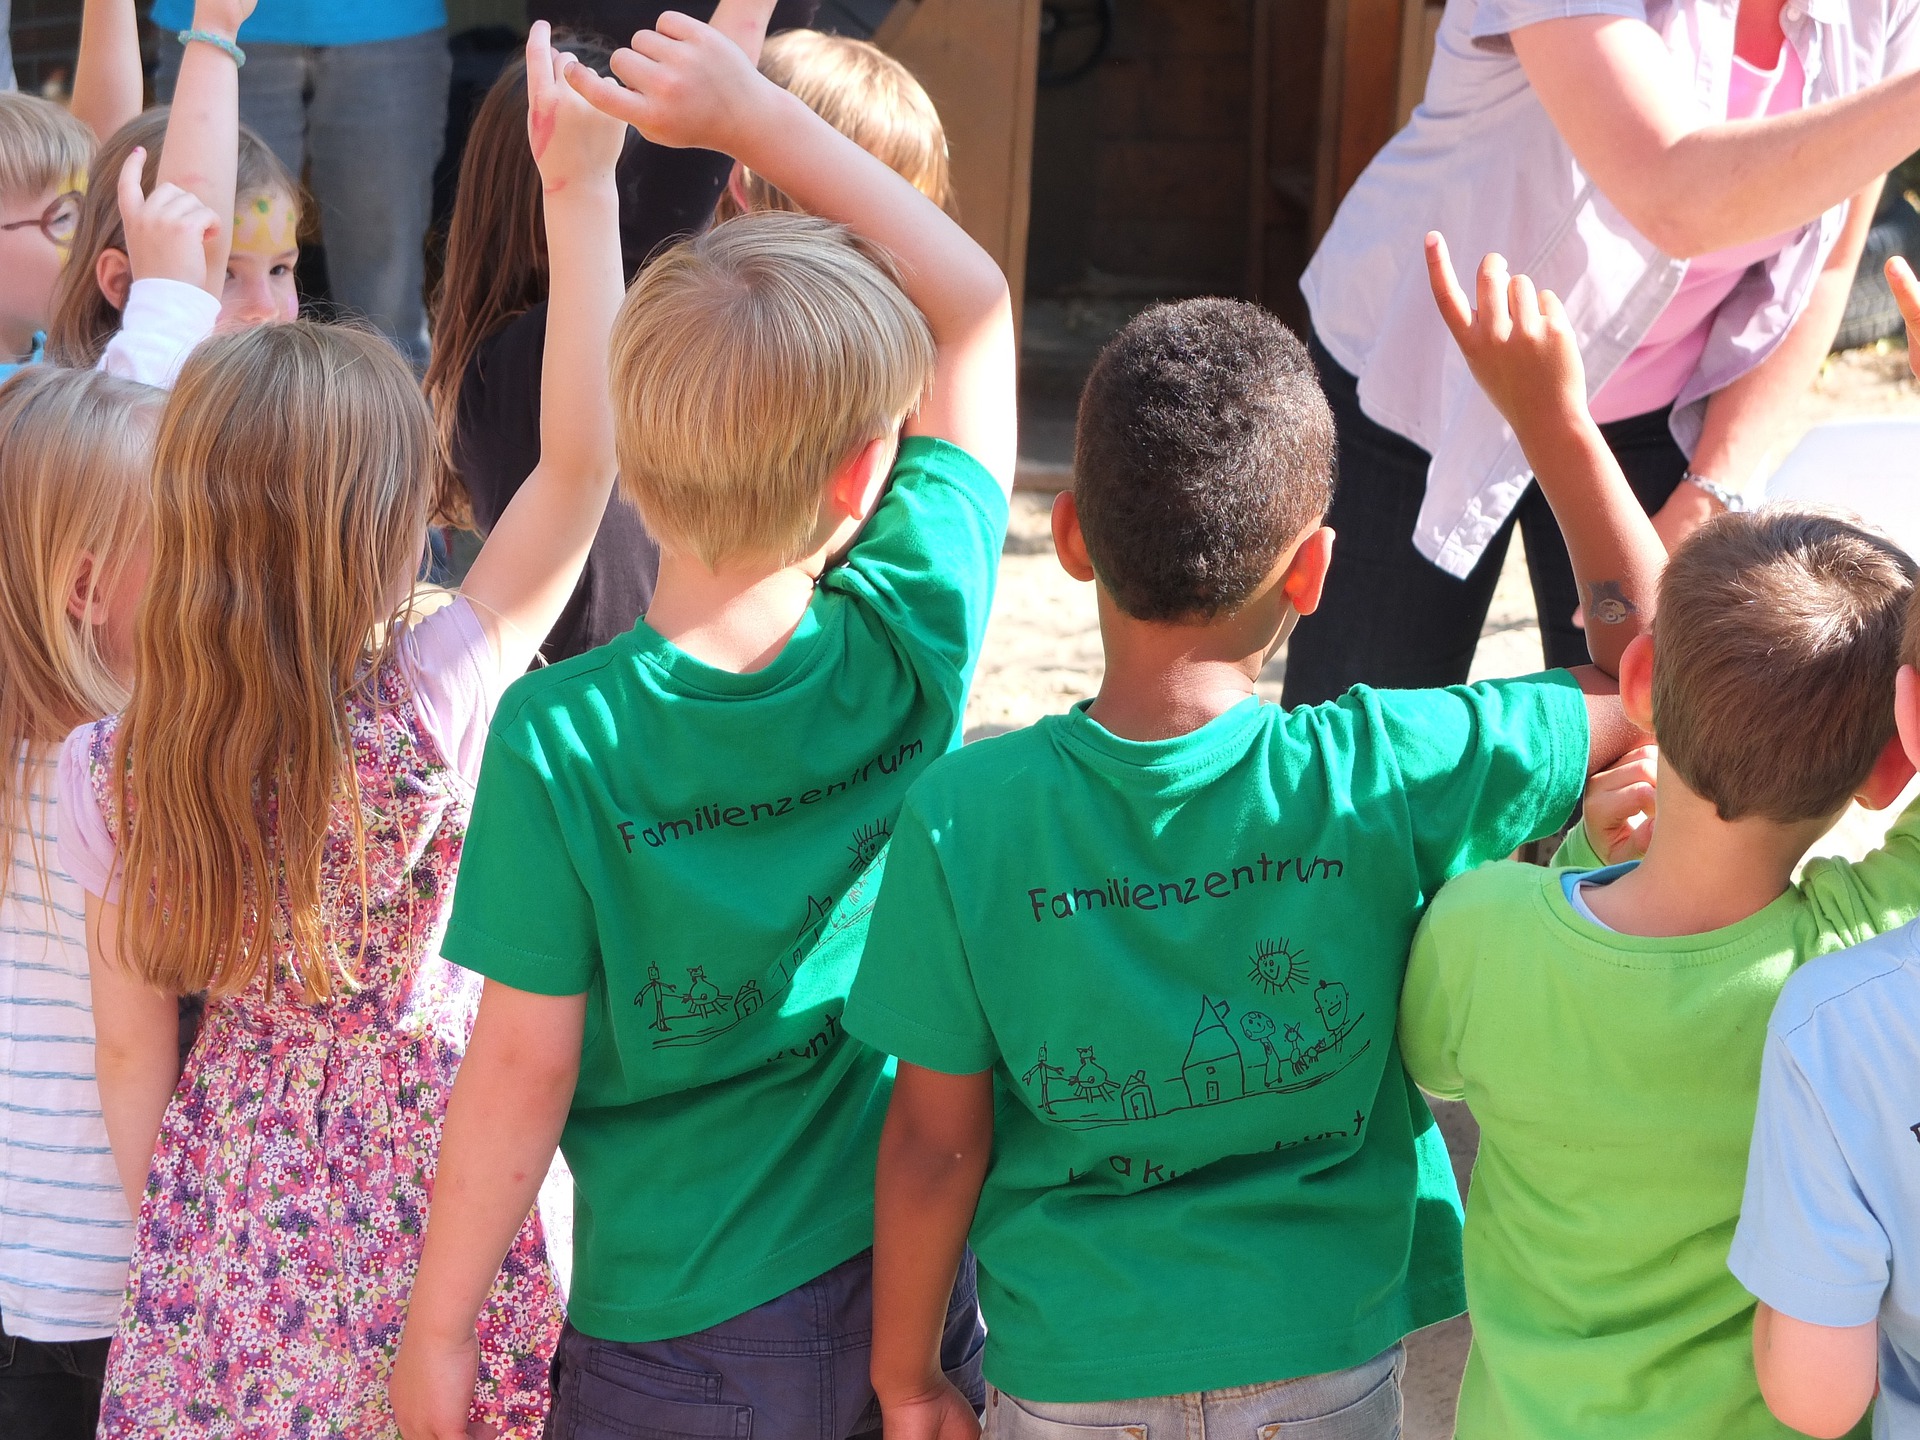 Children putting their hands up to speak.